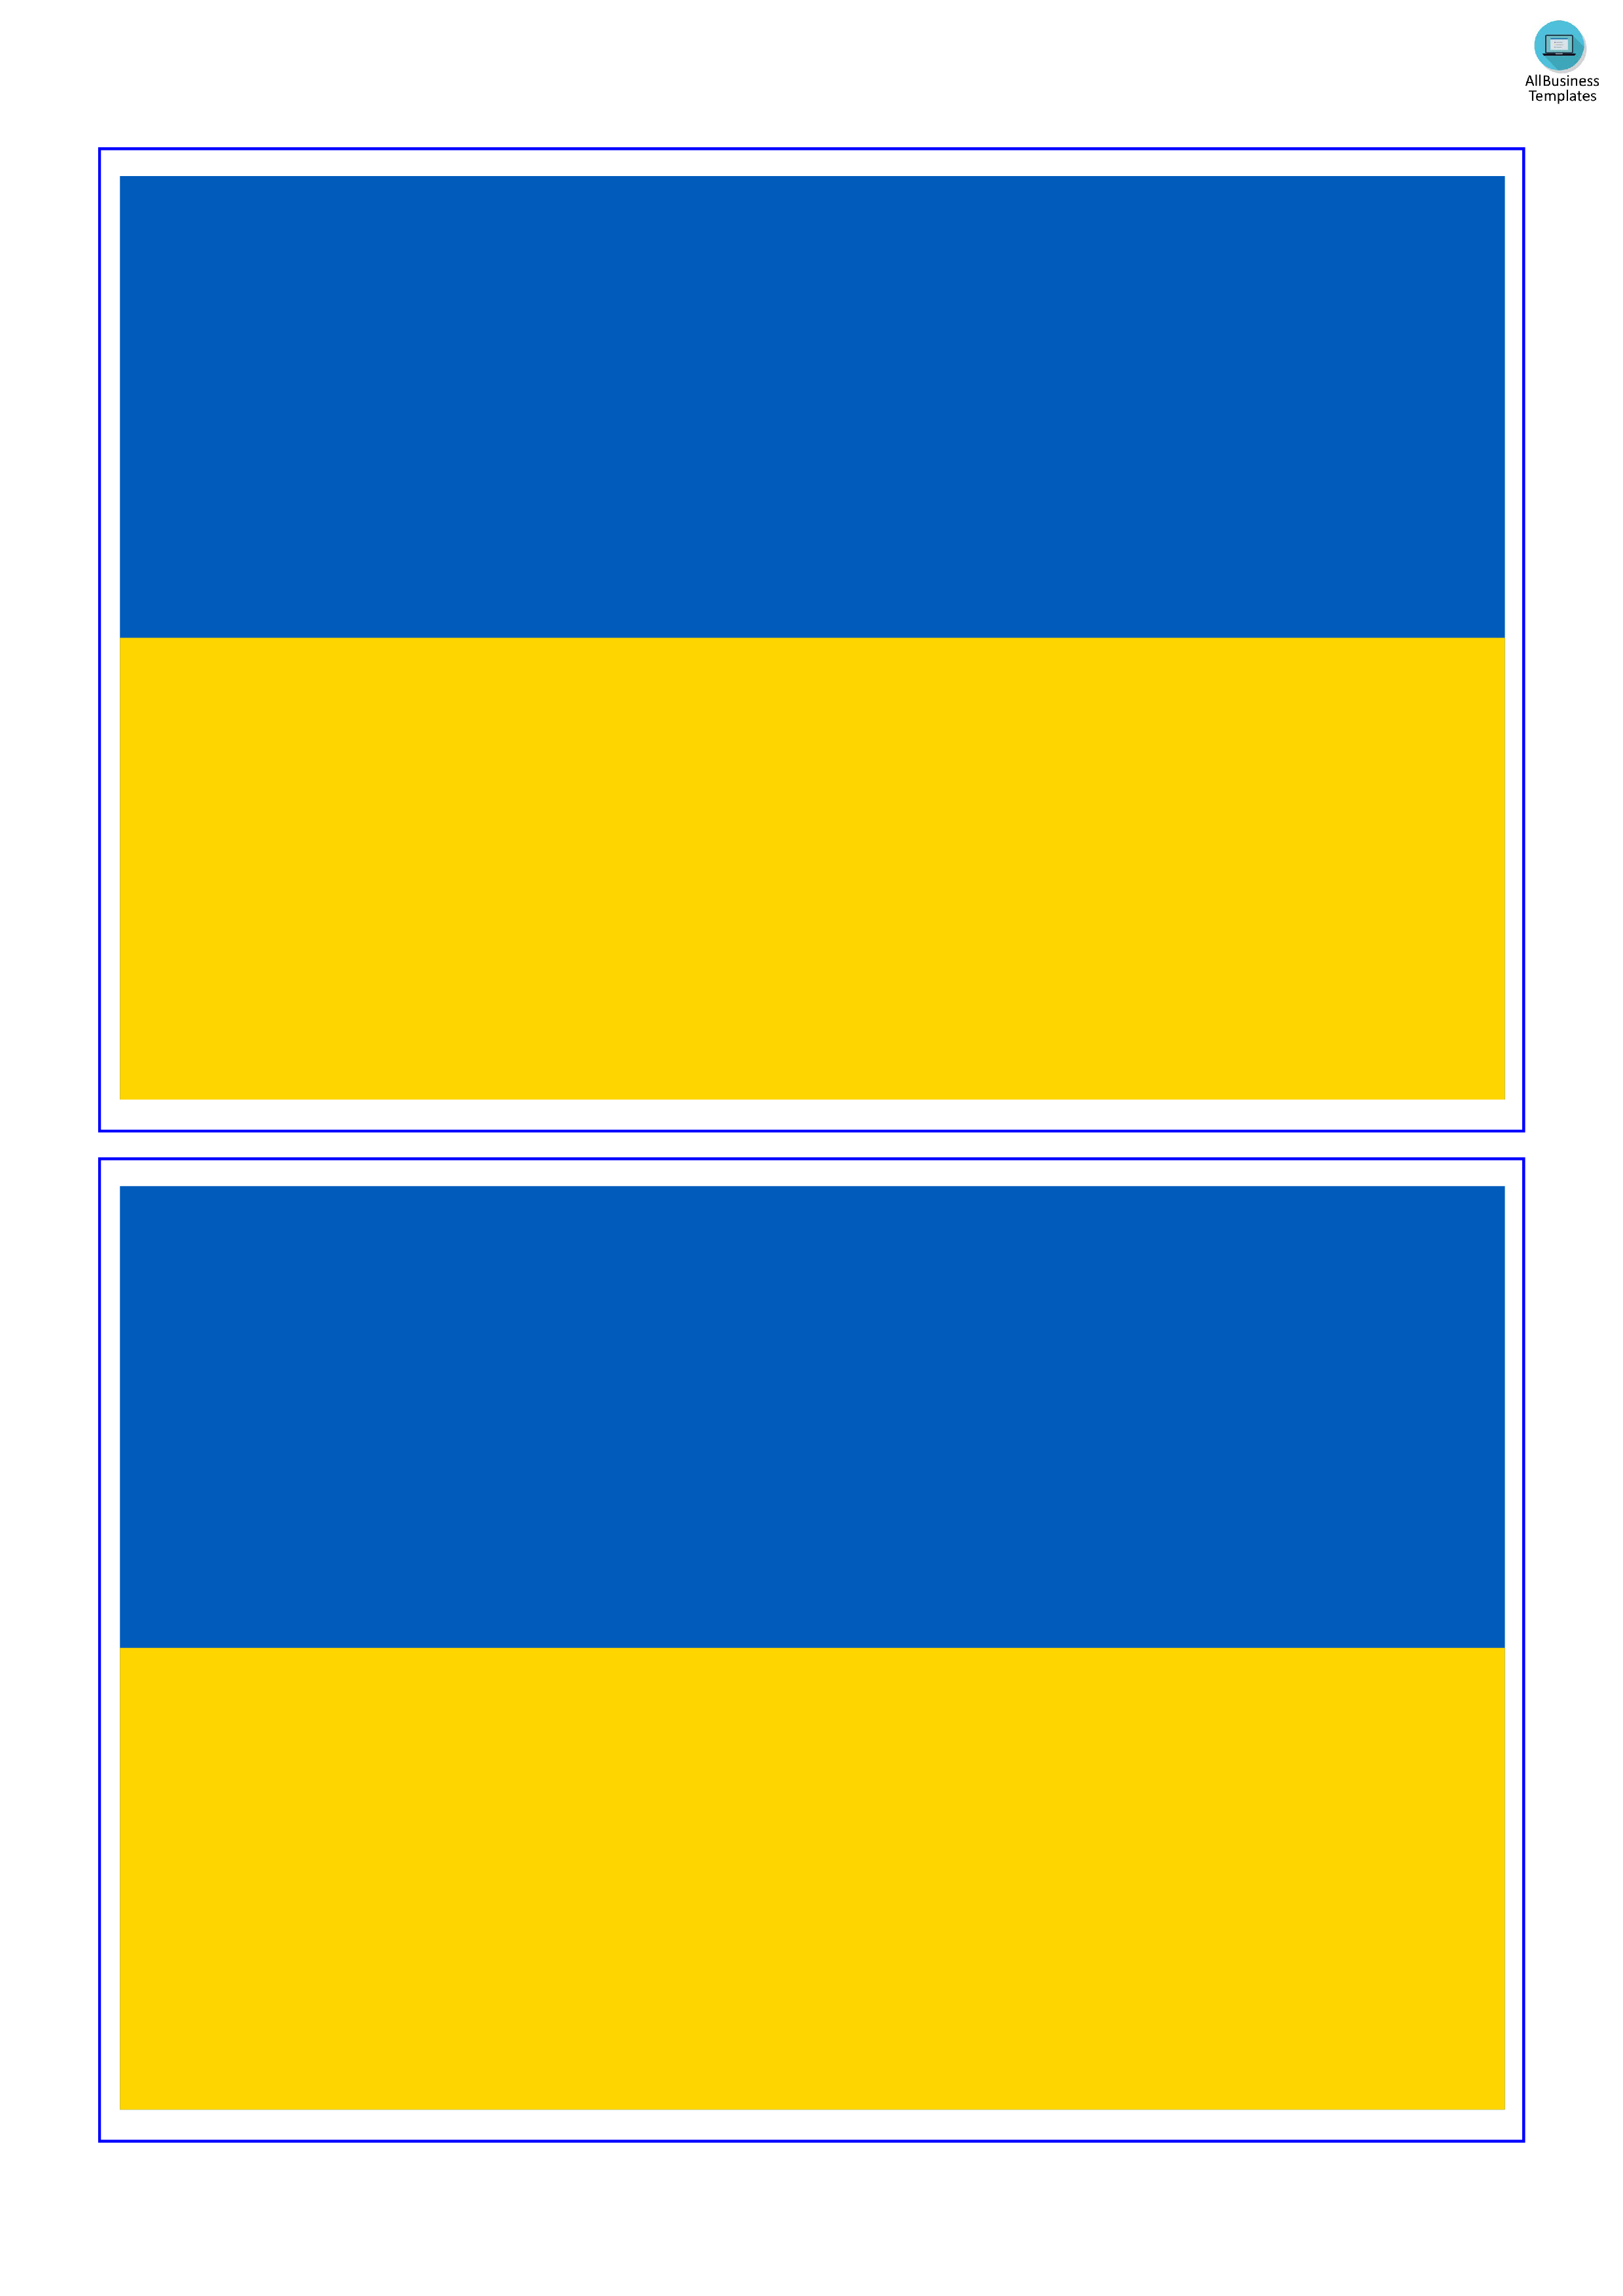 ukraine flag plantilla imagen principal